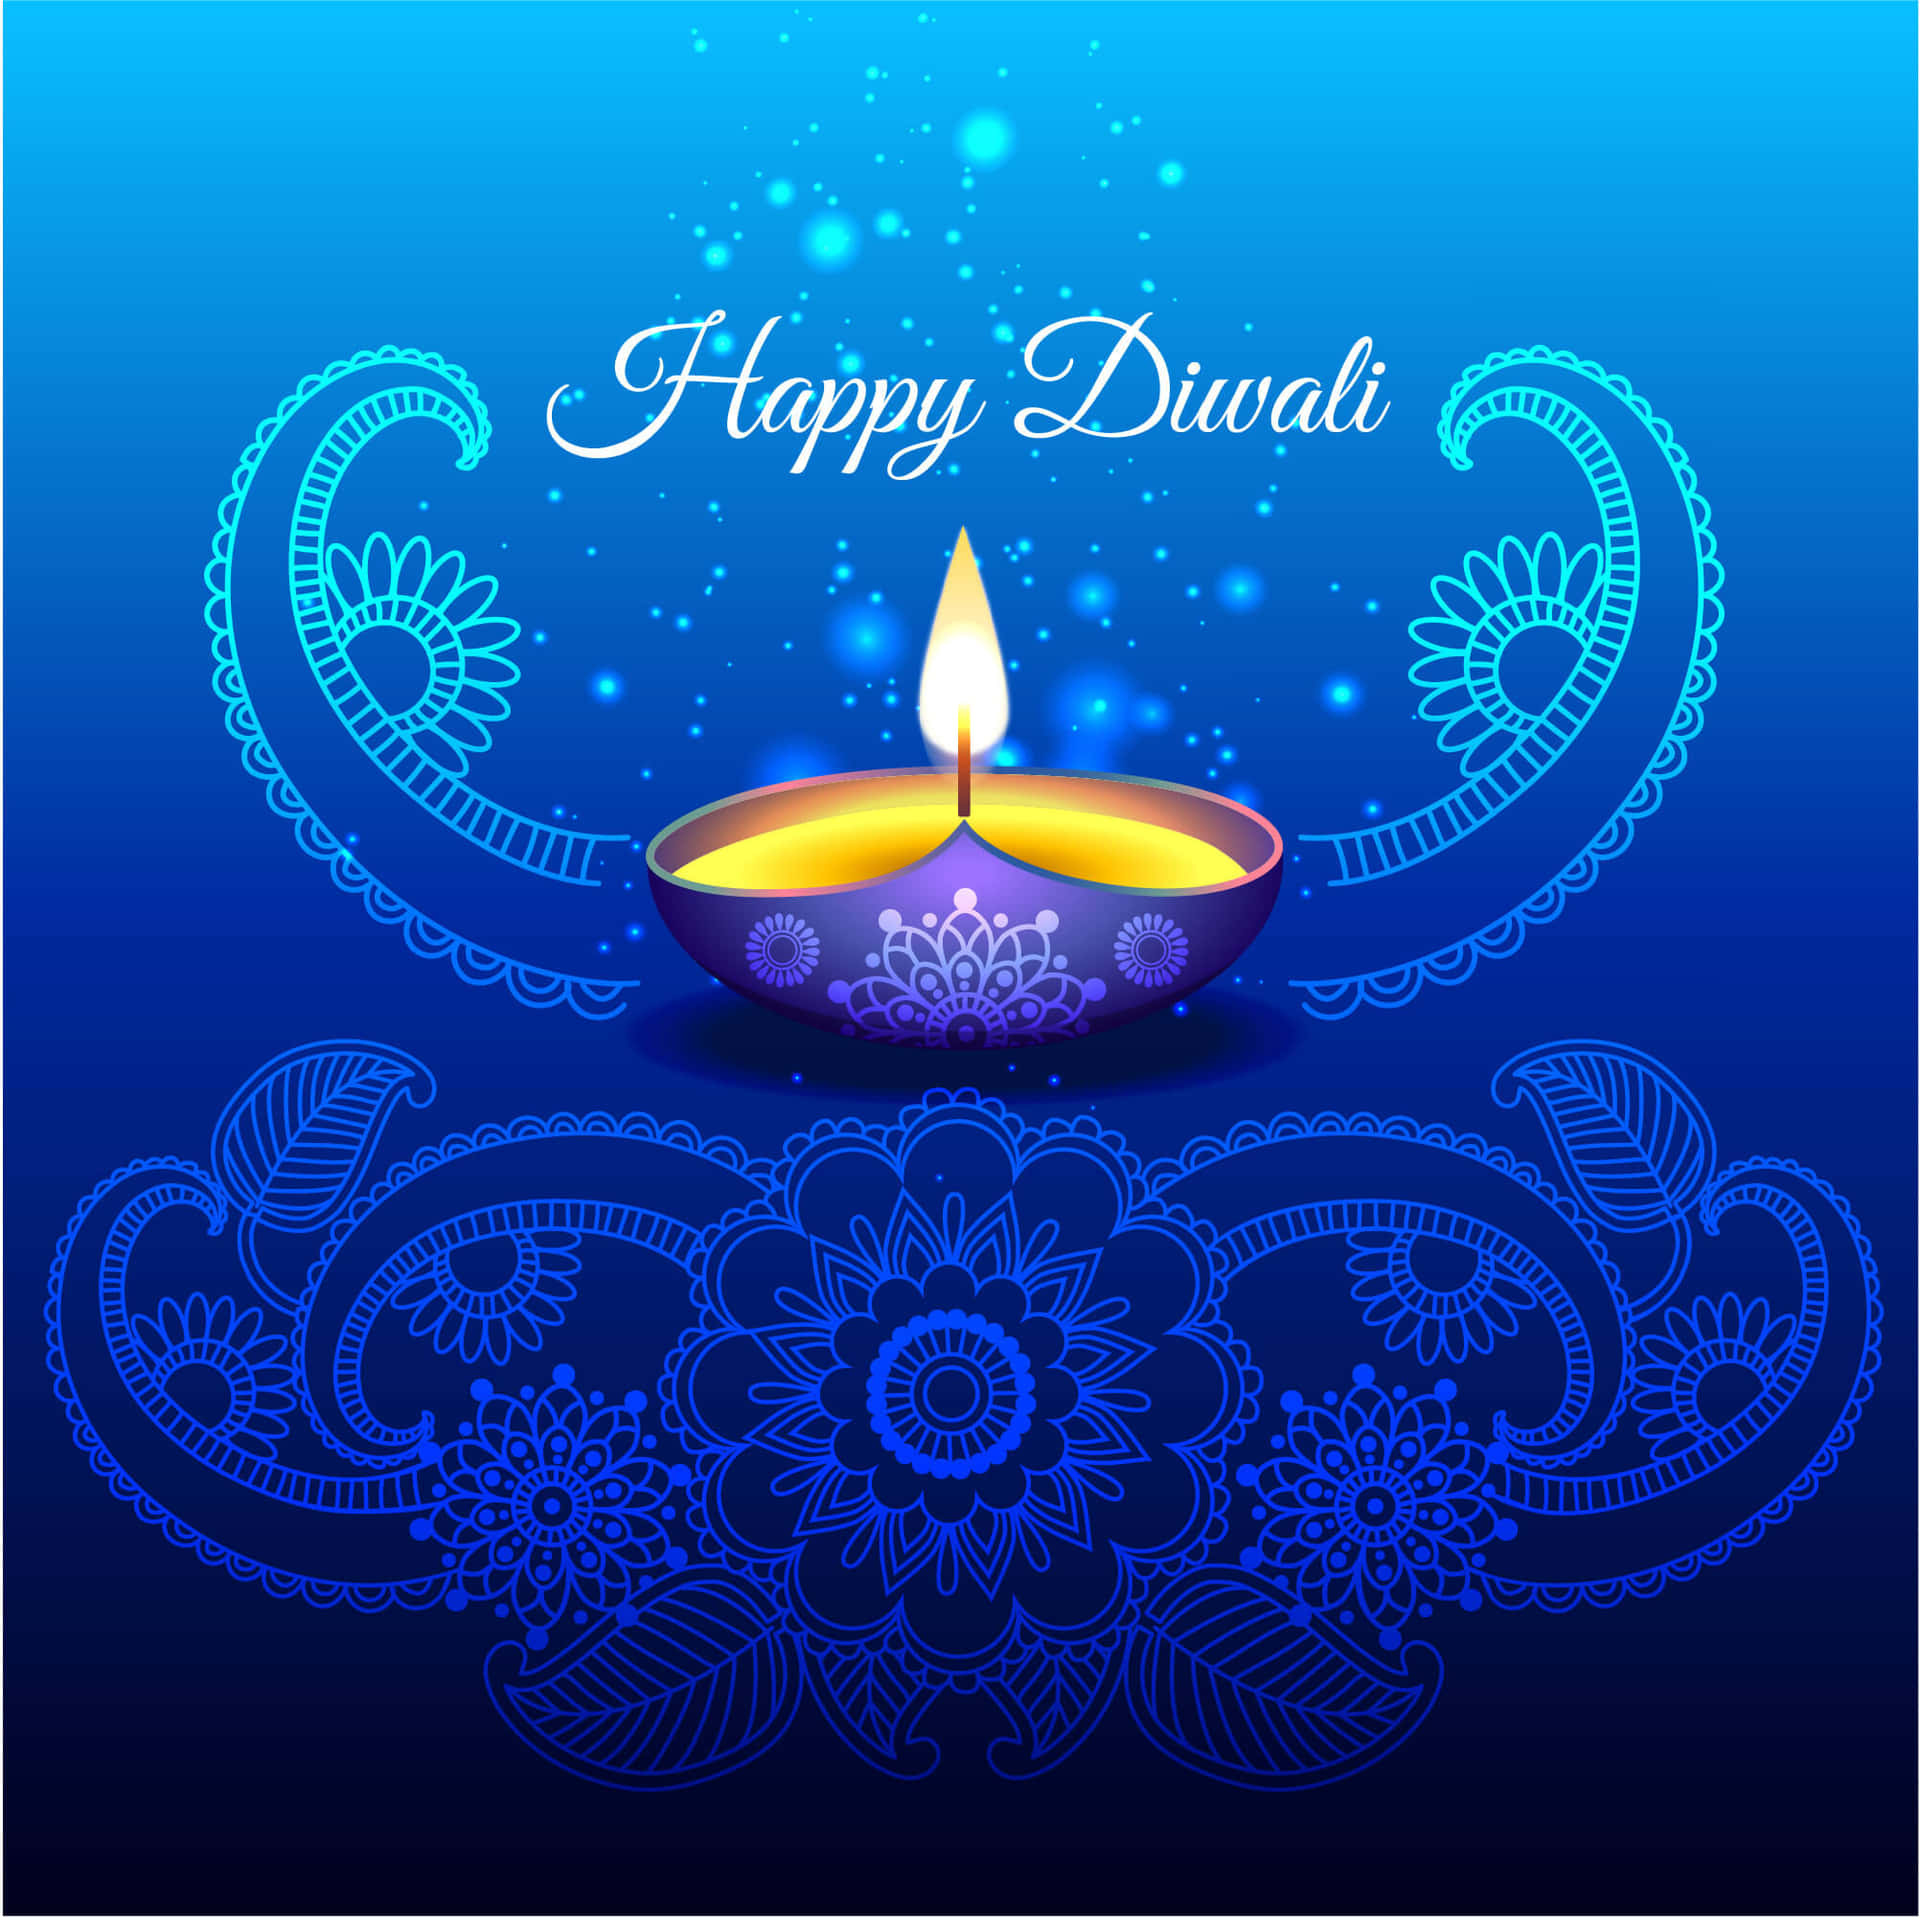 Tarjetade Felicitación De Diwali Con Una Vela